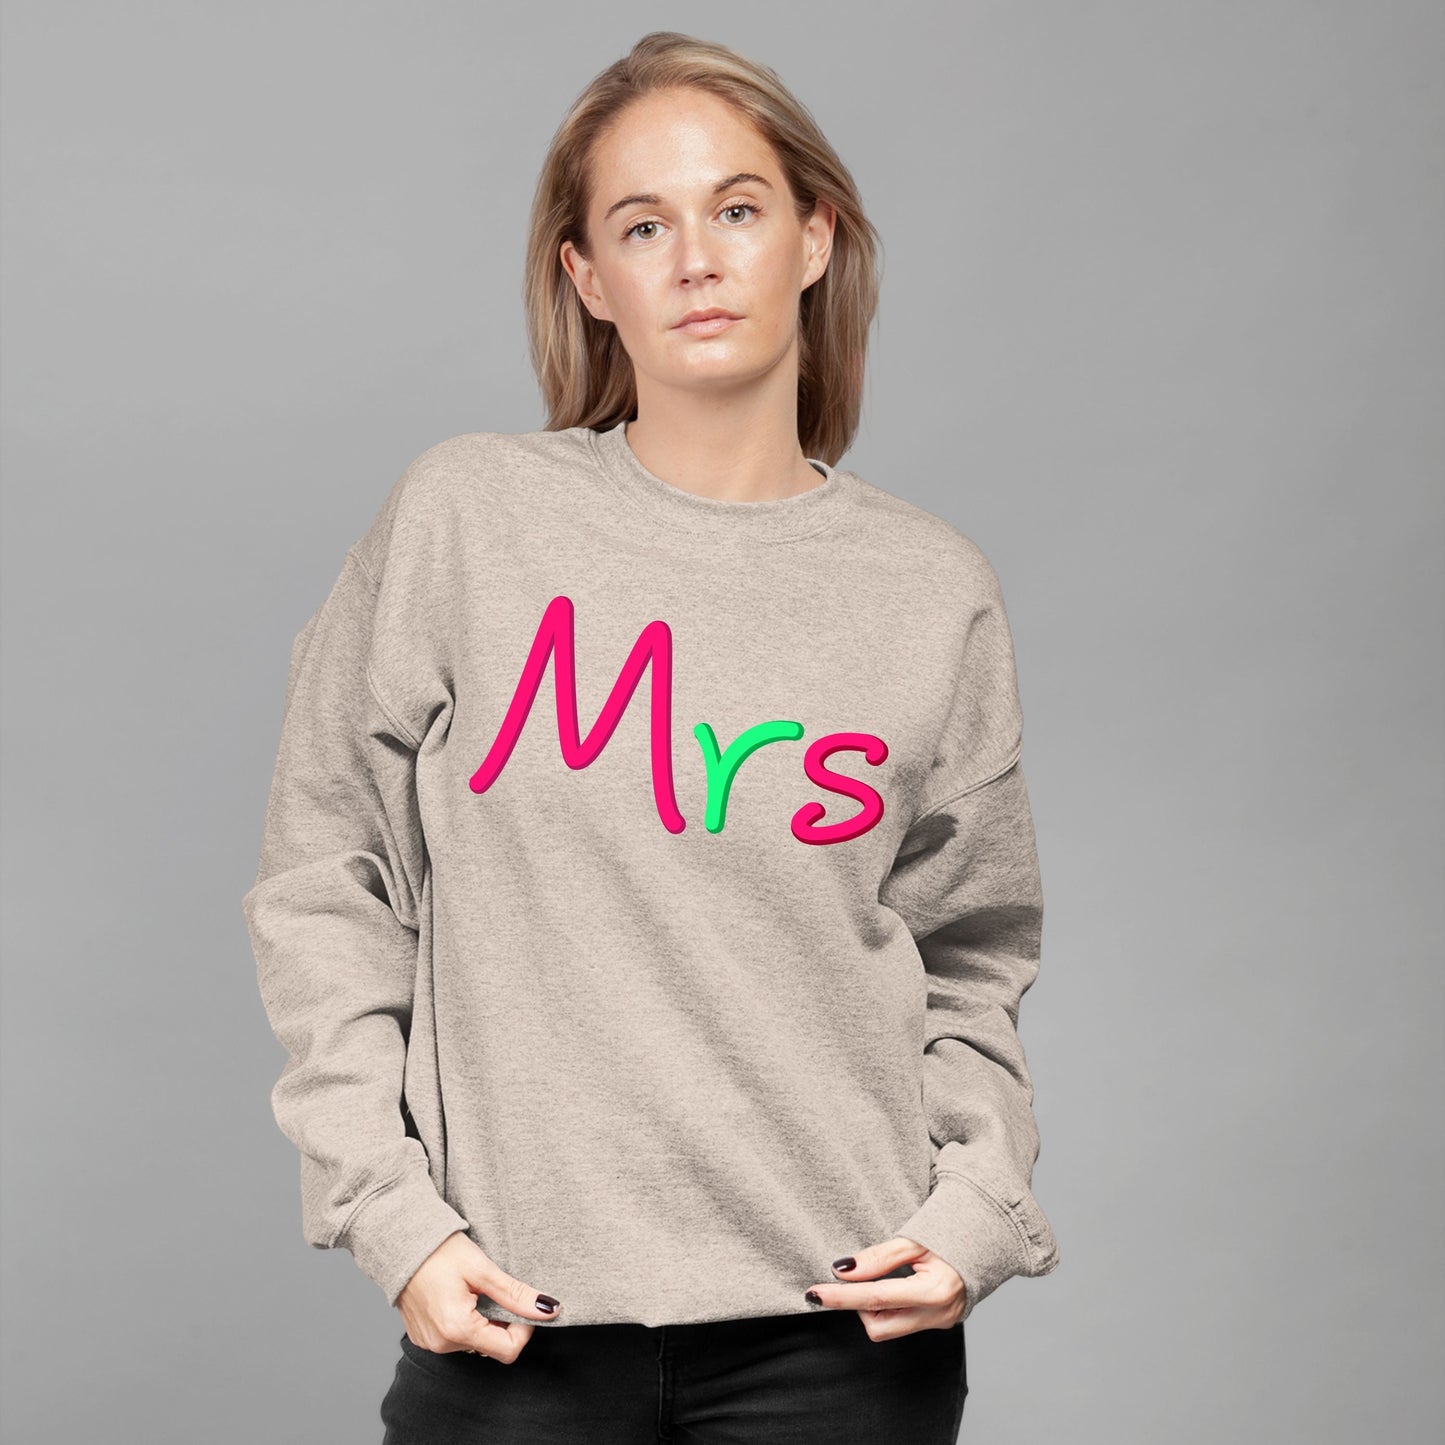 Mrs, Christmas Long Sleeves, Christmas Crewneck For Women, Christmas Sweatshirt, Christmas Sweater, Christmas Present